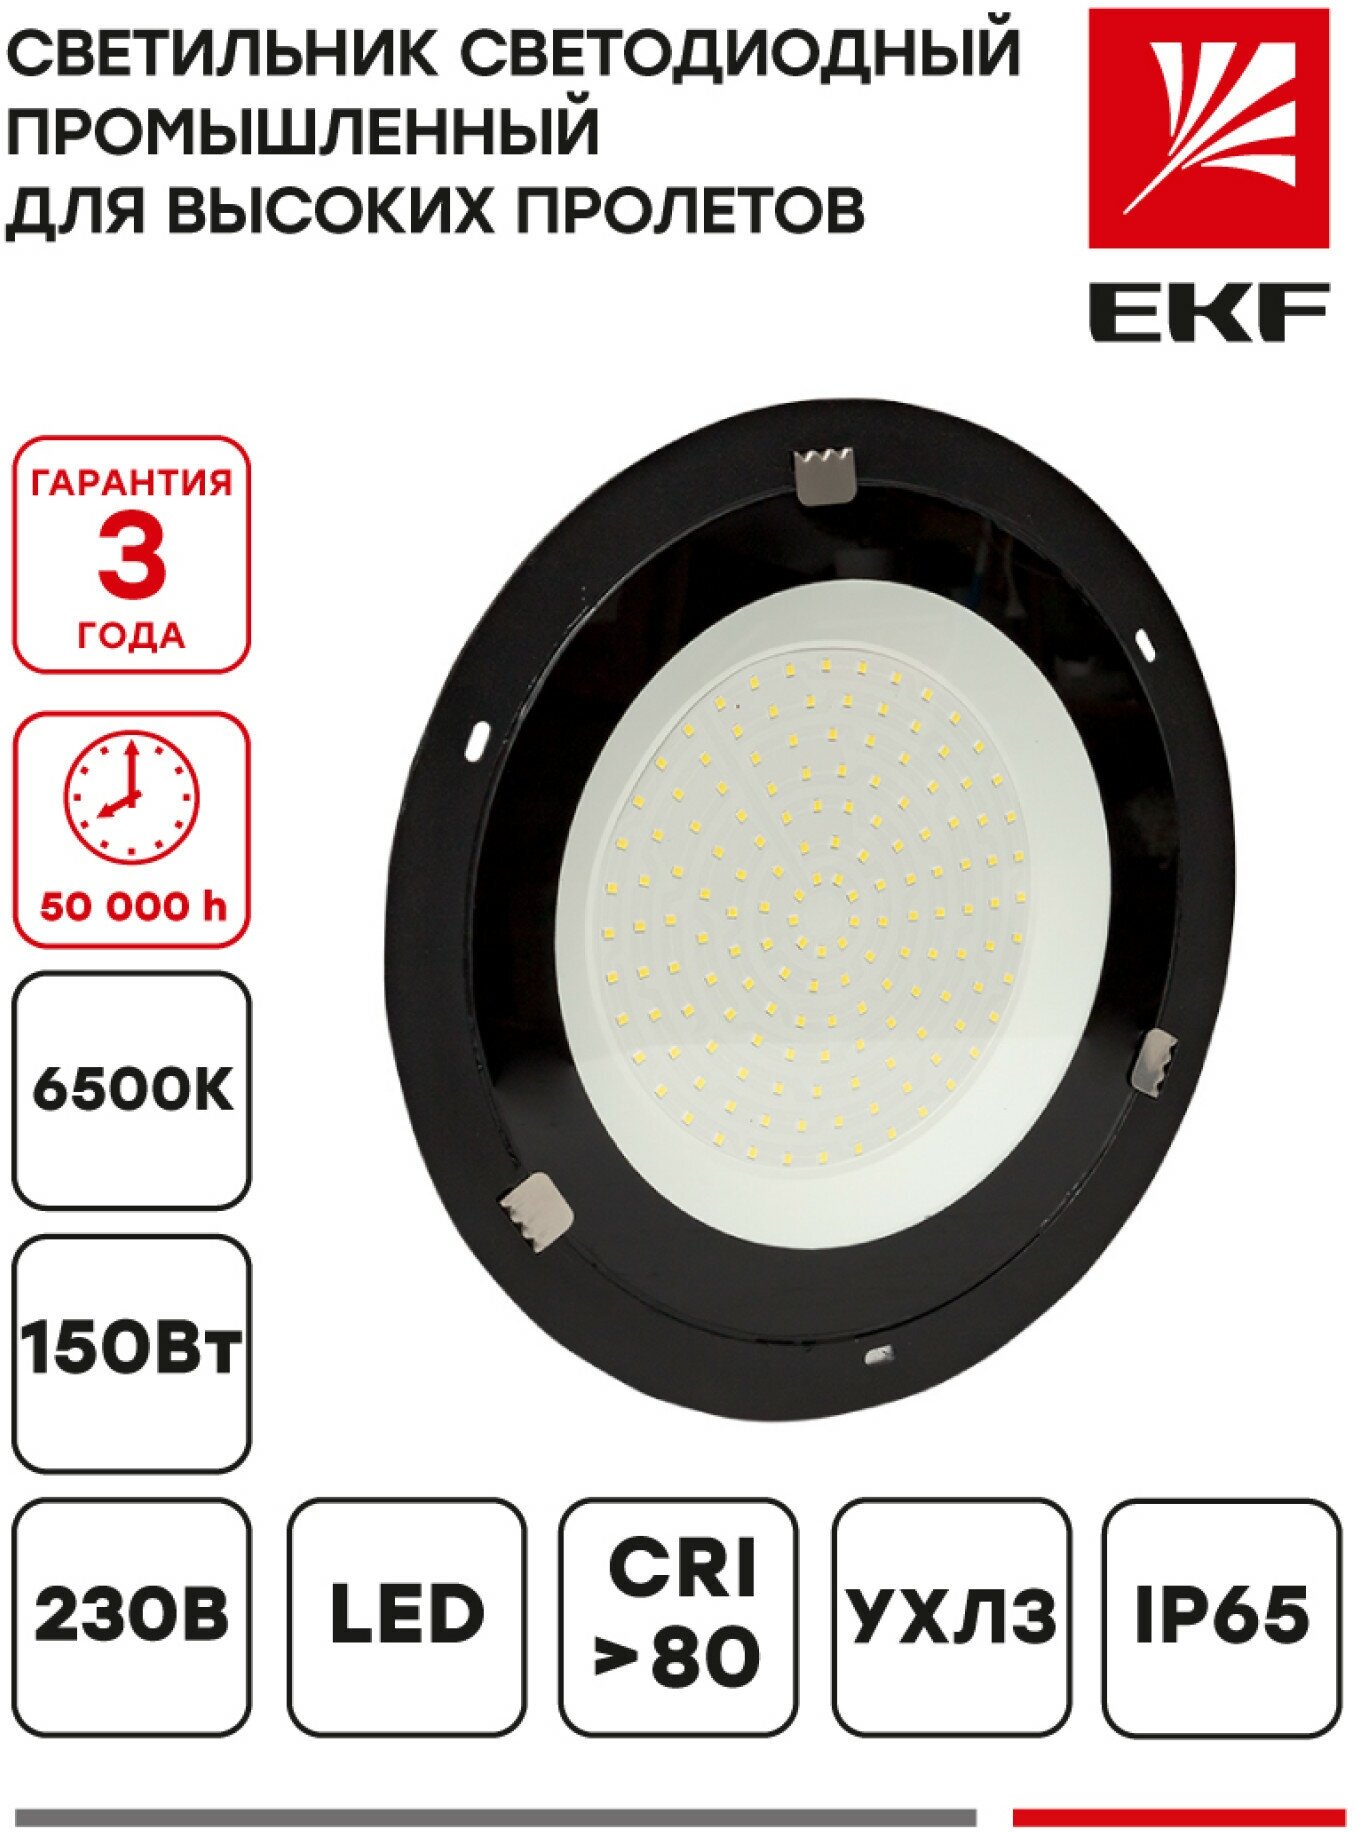 Светильник светодиодный промышленный для высоких пролетов ДСП-1102 150Вт 6500К IP65 EKF